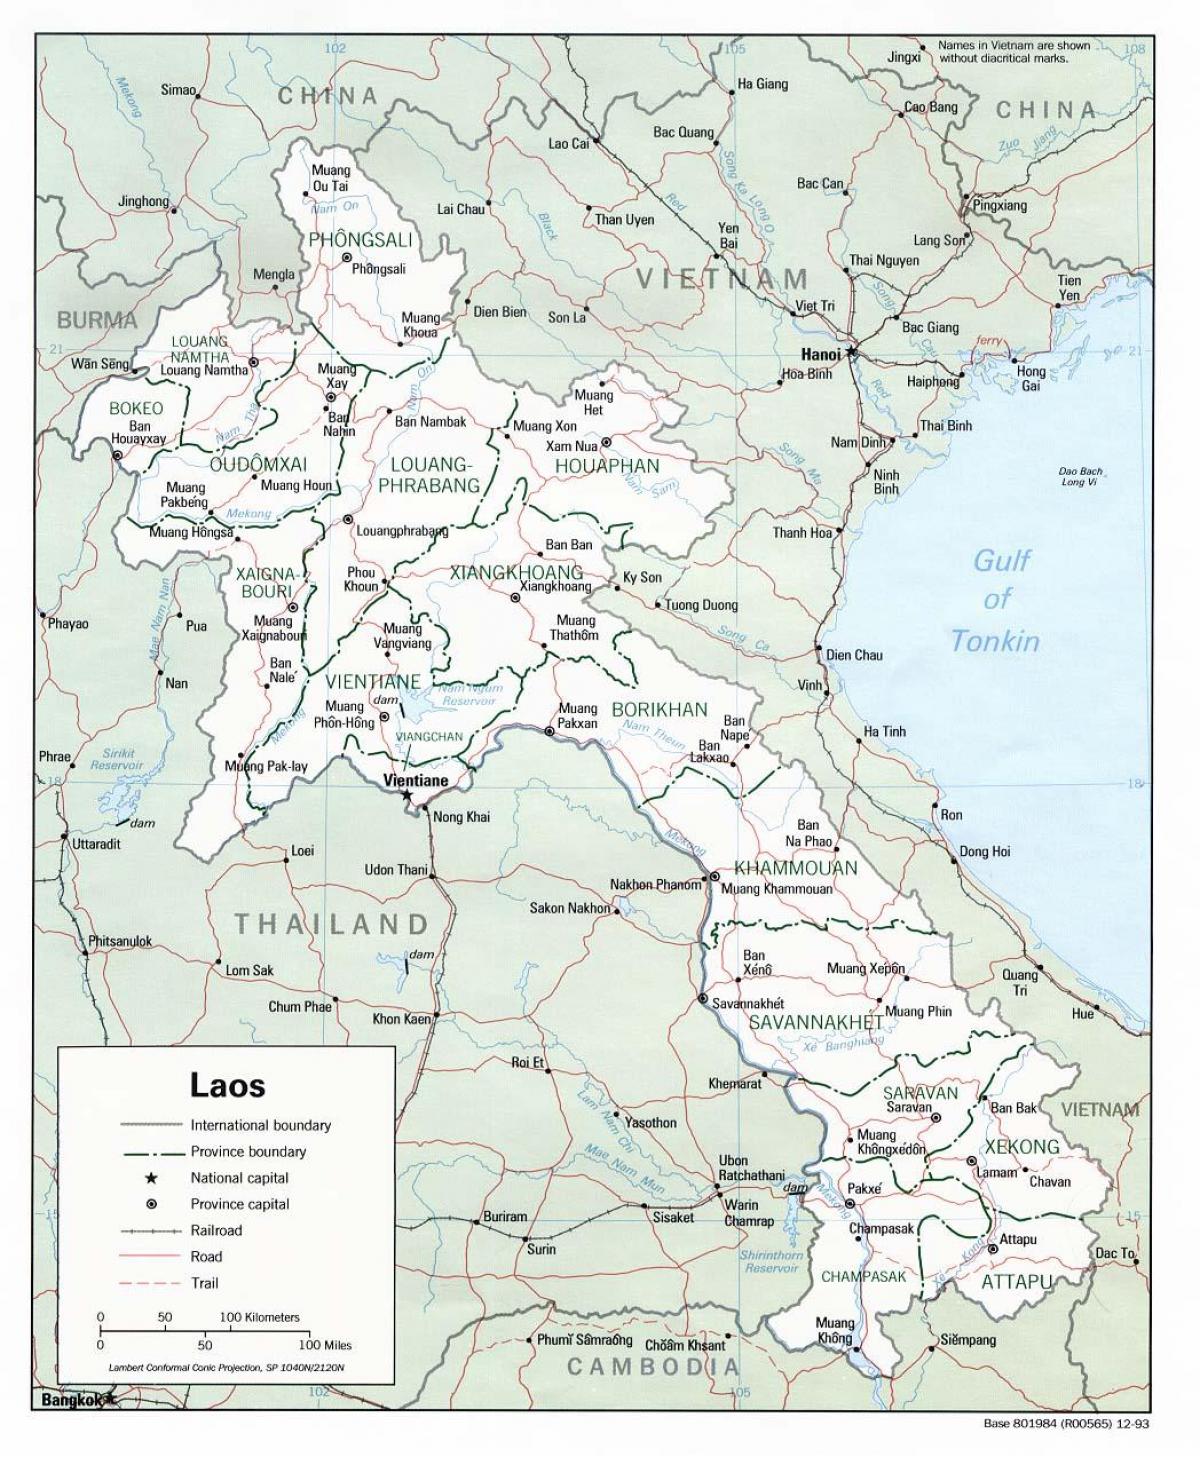 Լաոս քարտեզ քաղաքների հետ